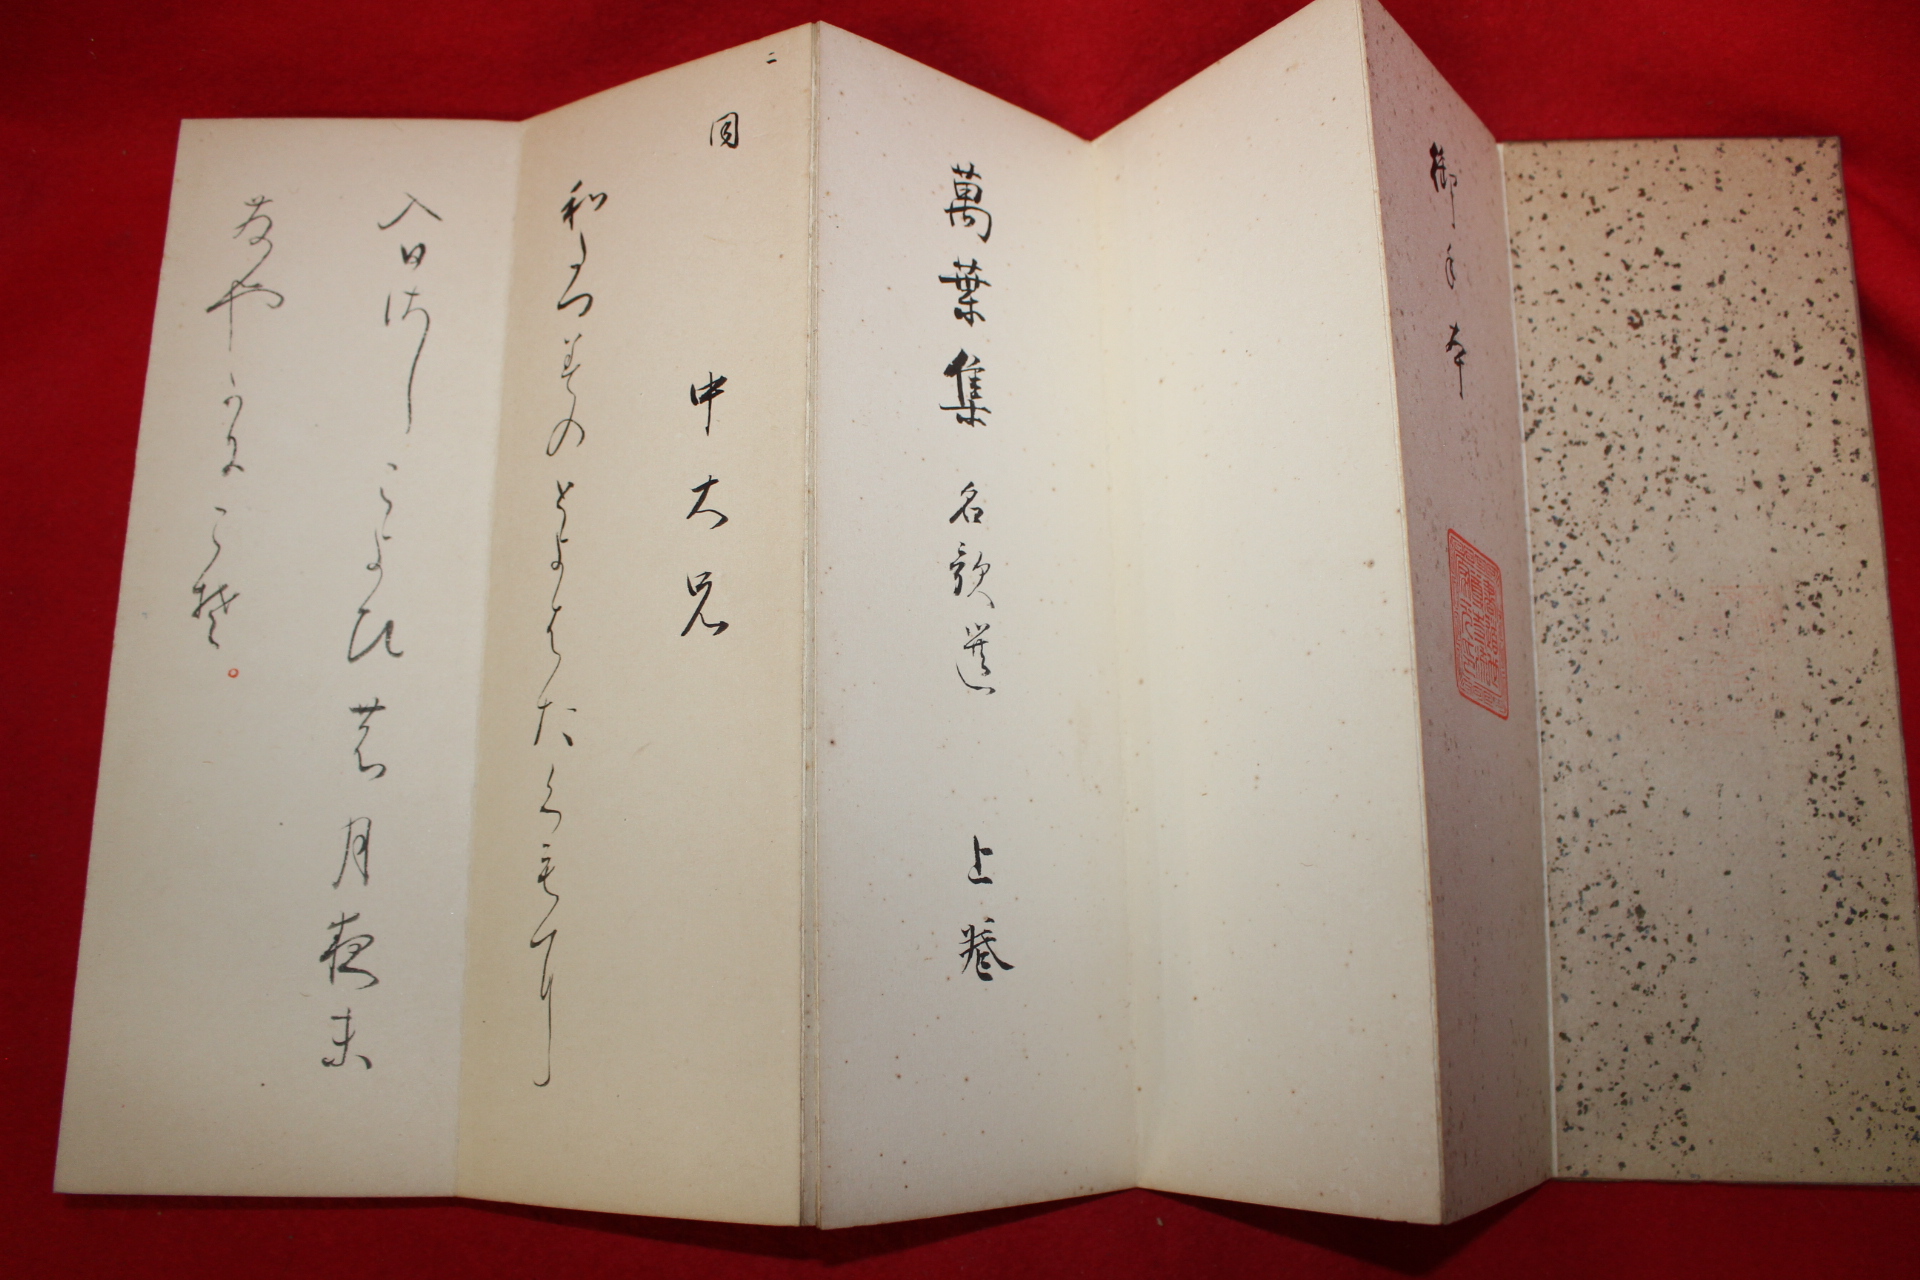 에도시기 일본필사절첩본 만엽집 1책